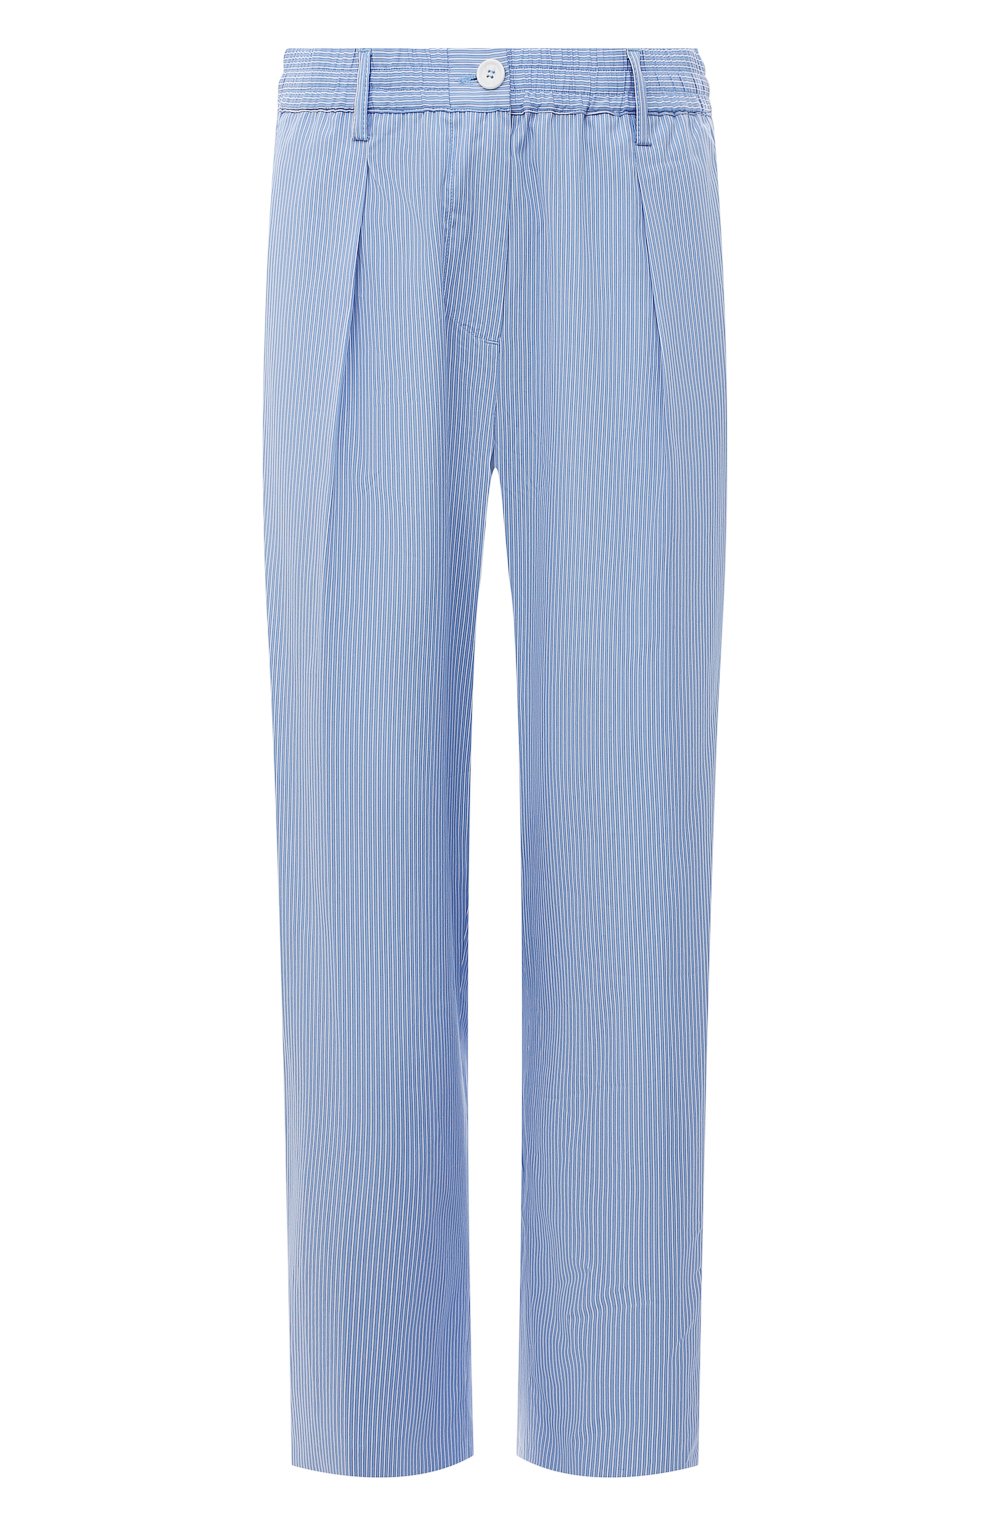 Хлопковые брюки Aspesi голубого цвета